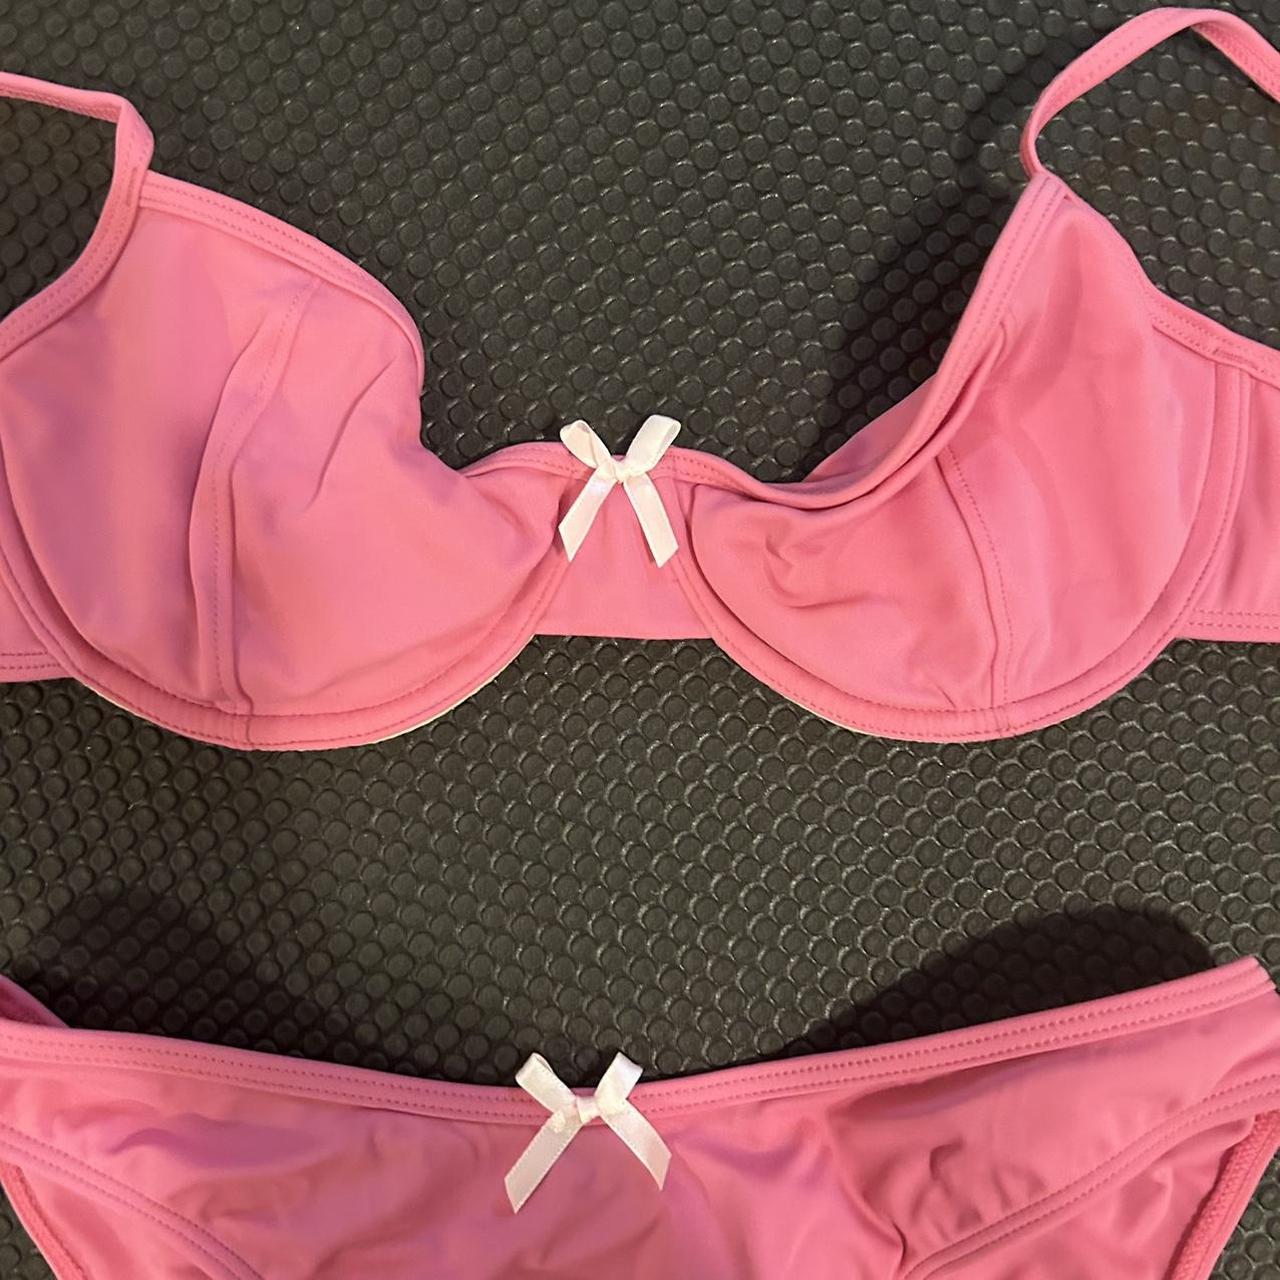 PacSun Women's Pink Bikinis-and-tankini-sets (2)